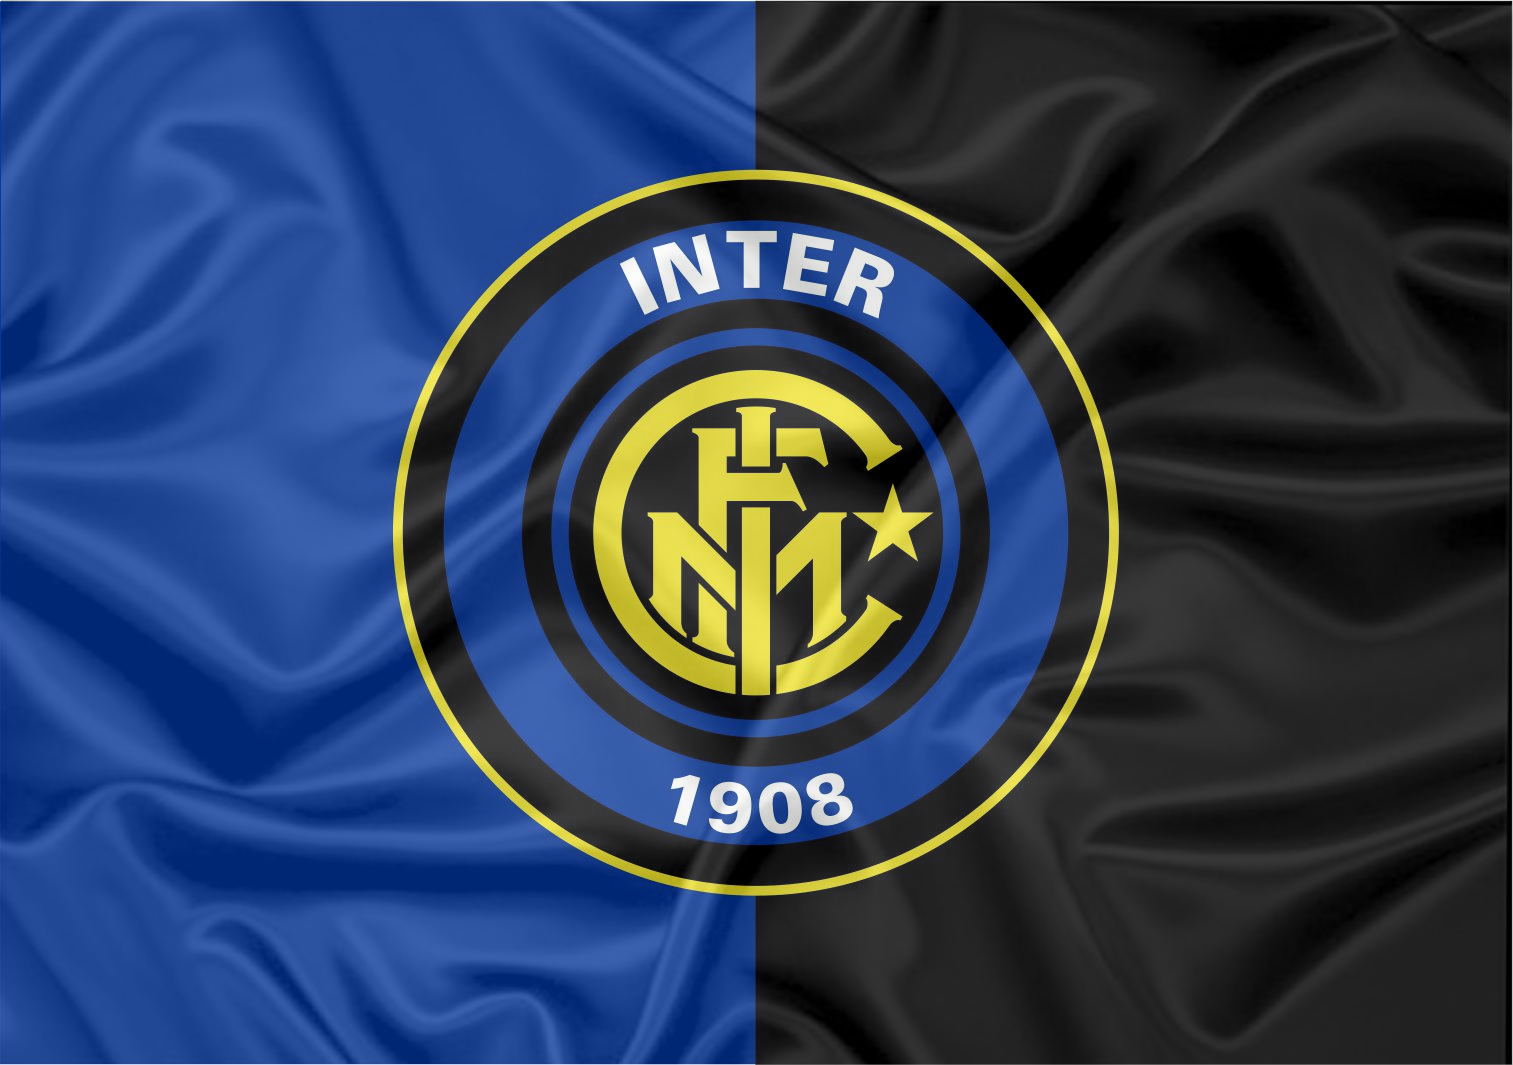 Inter r. ФК Интер эмблема.